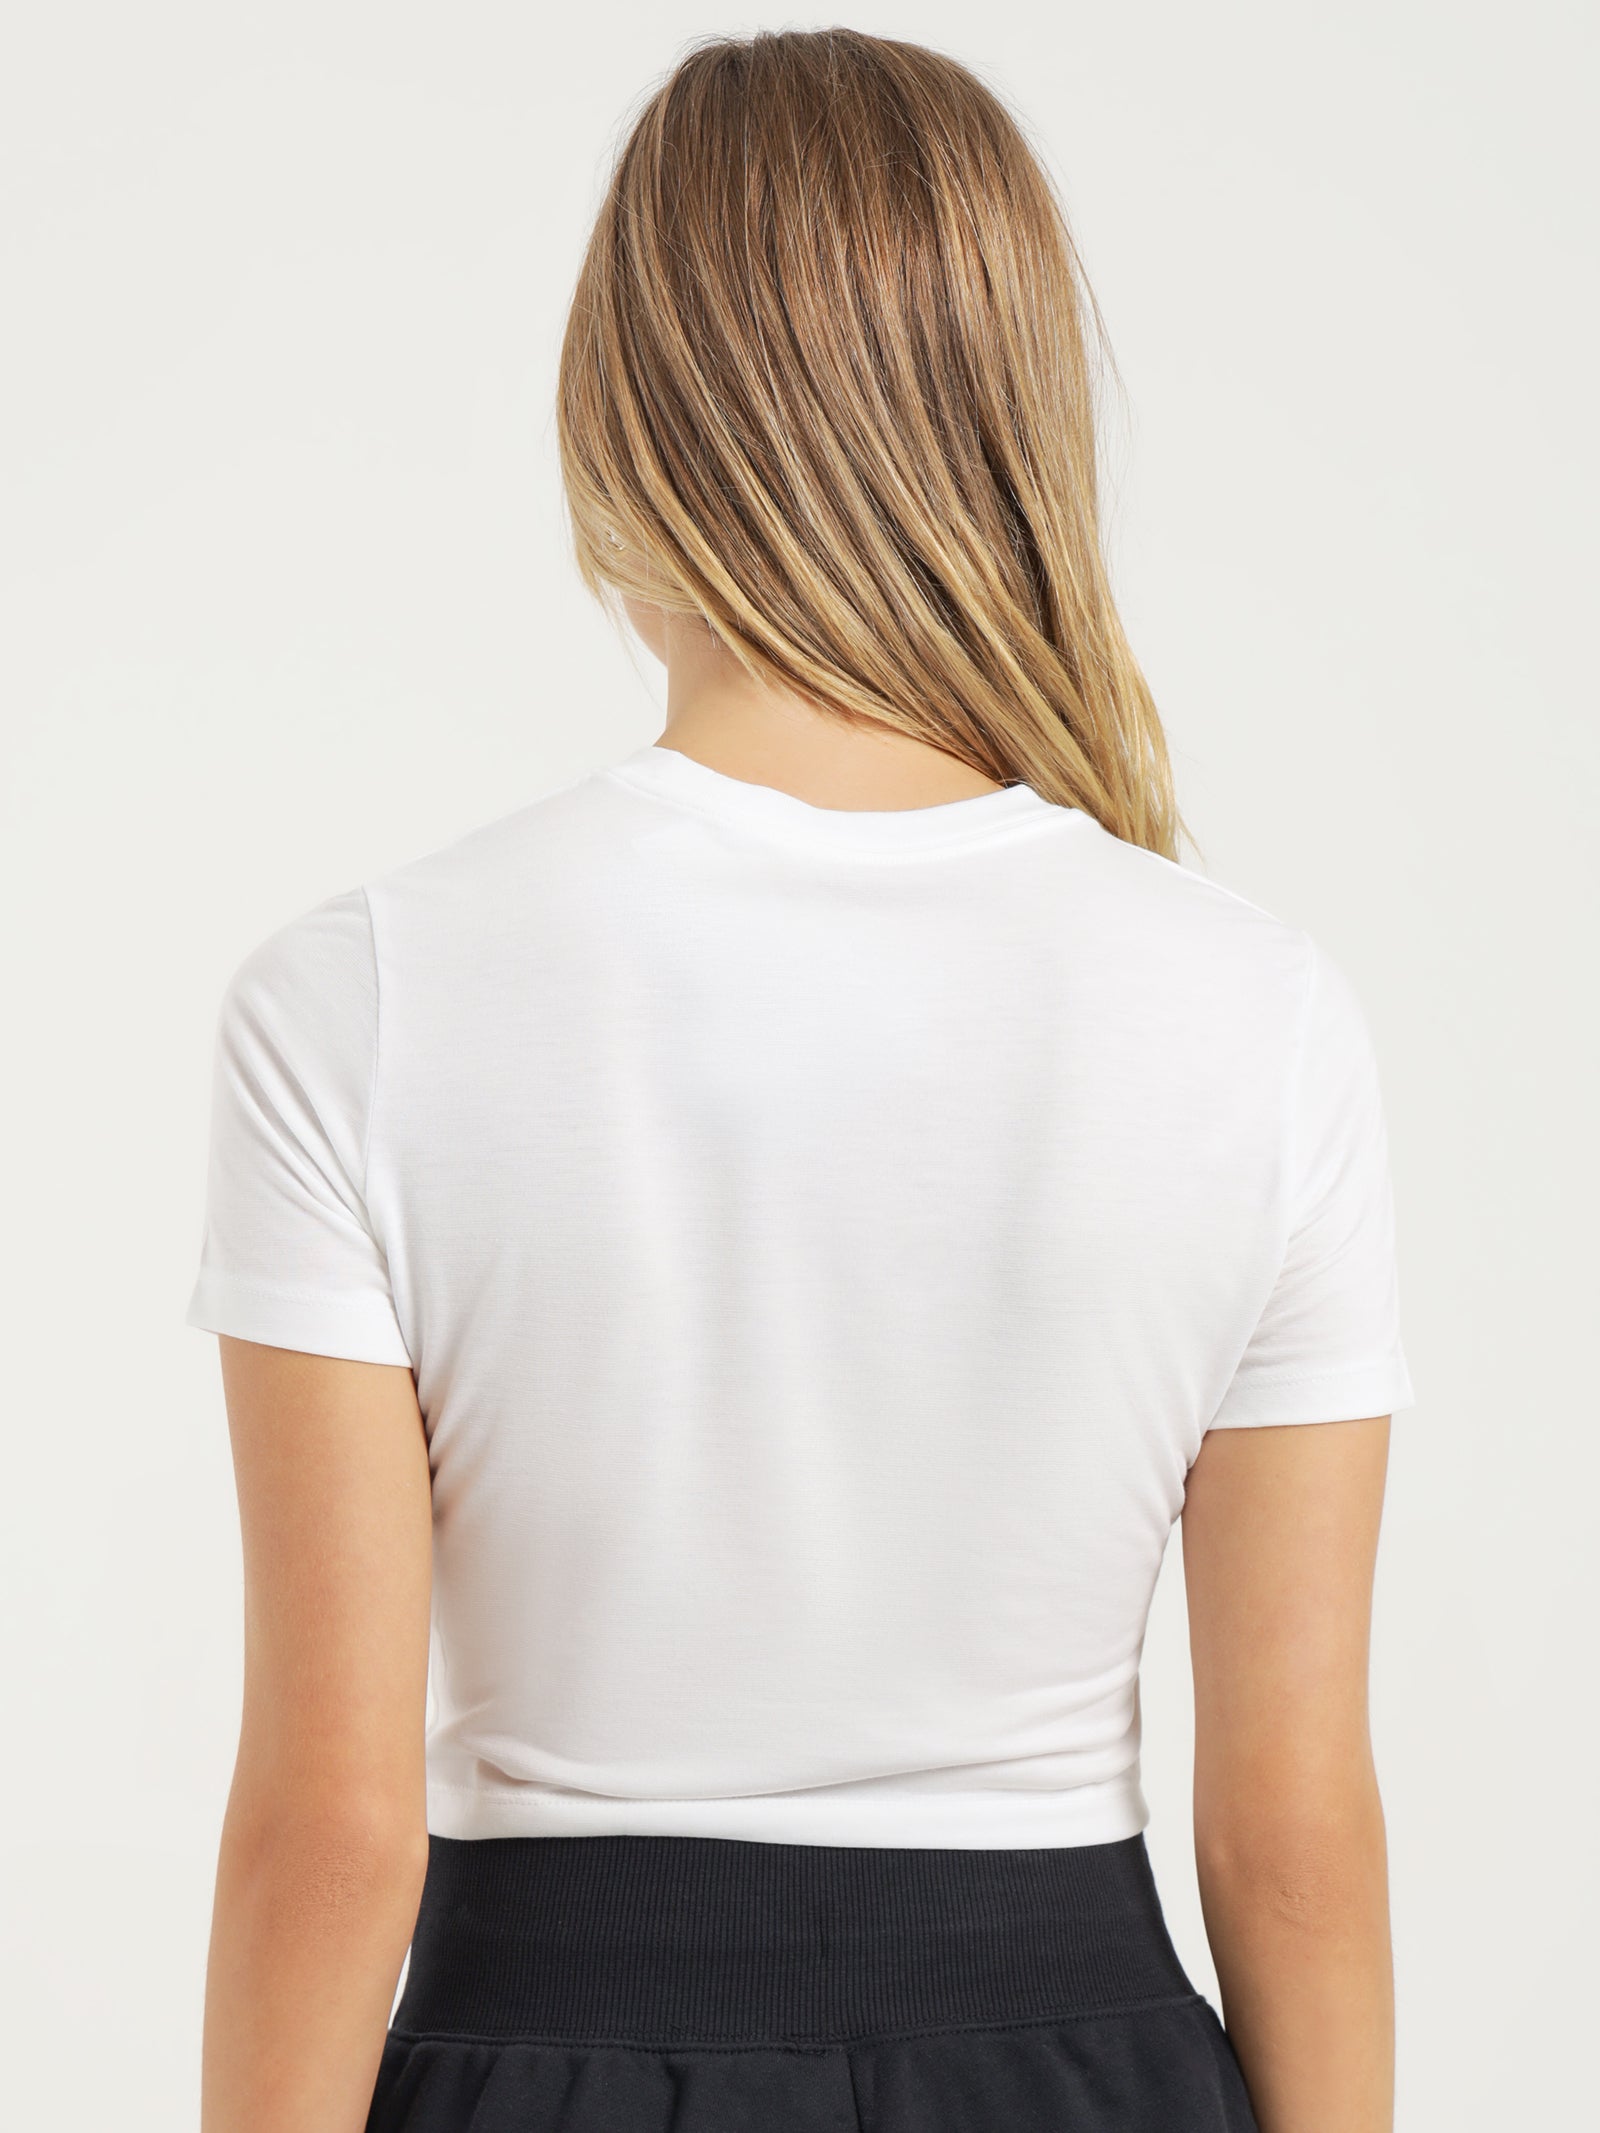 Nike Sportswear Essential Women Lifestyle T-Shirt White Dd1328-100